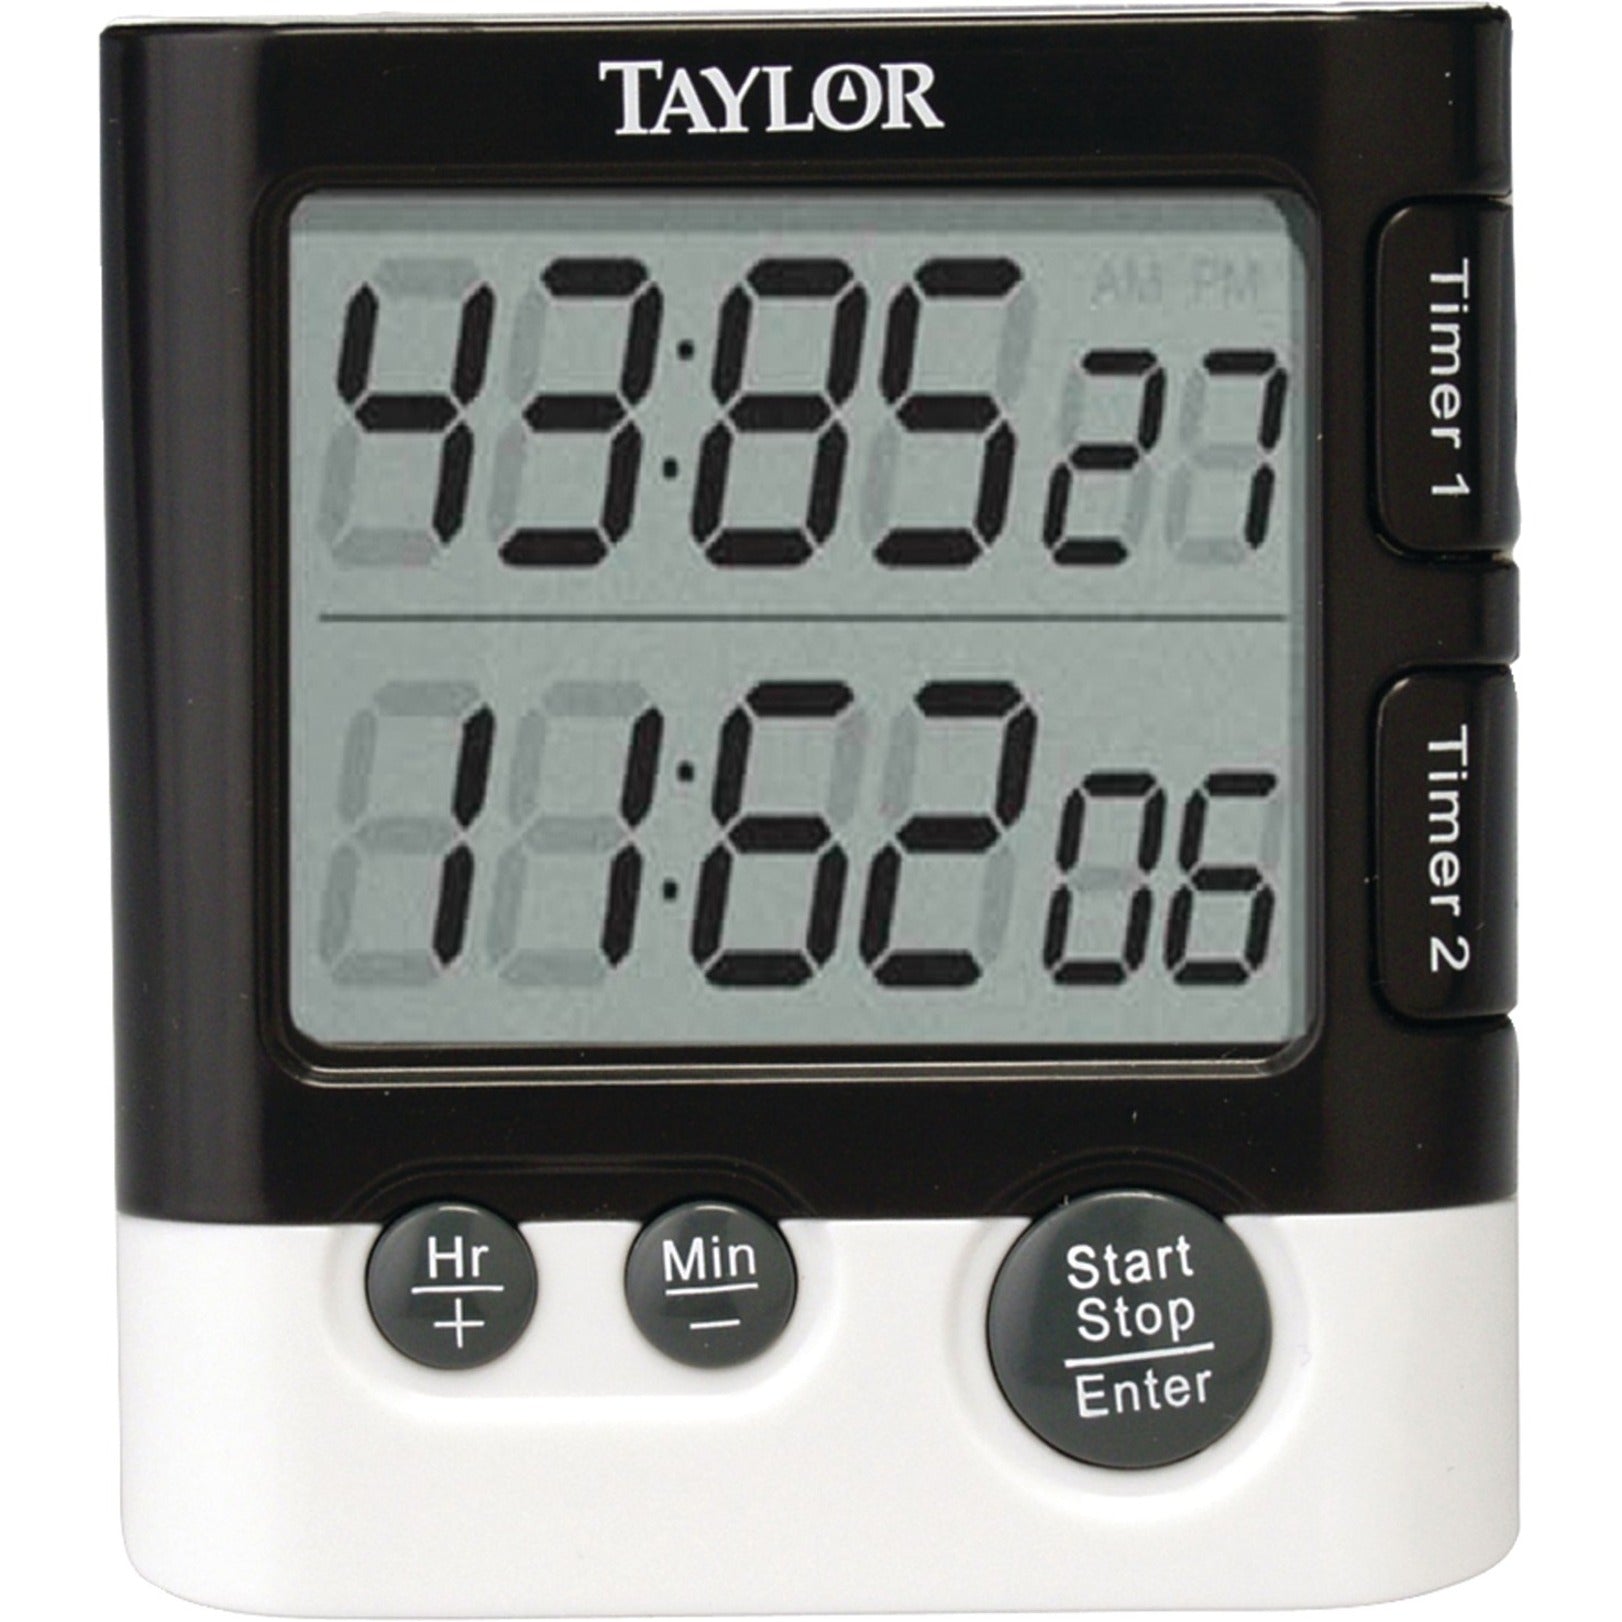 Taylor 5828 Dual Event Timer Table Clock, Digital Quartz LCD